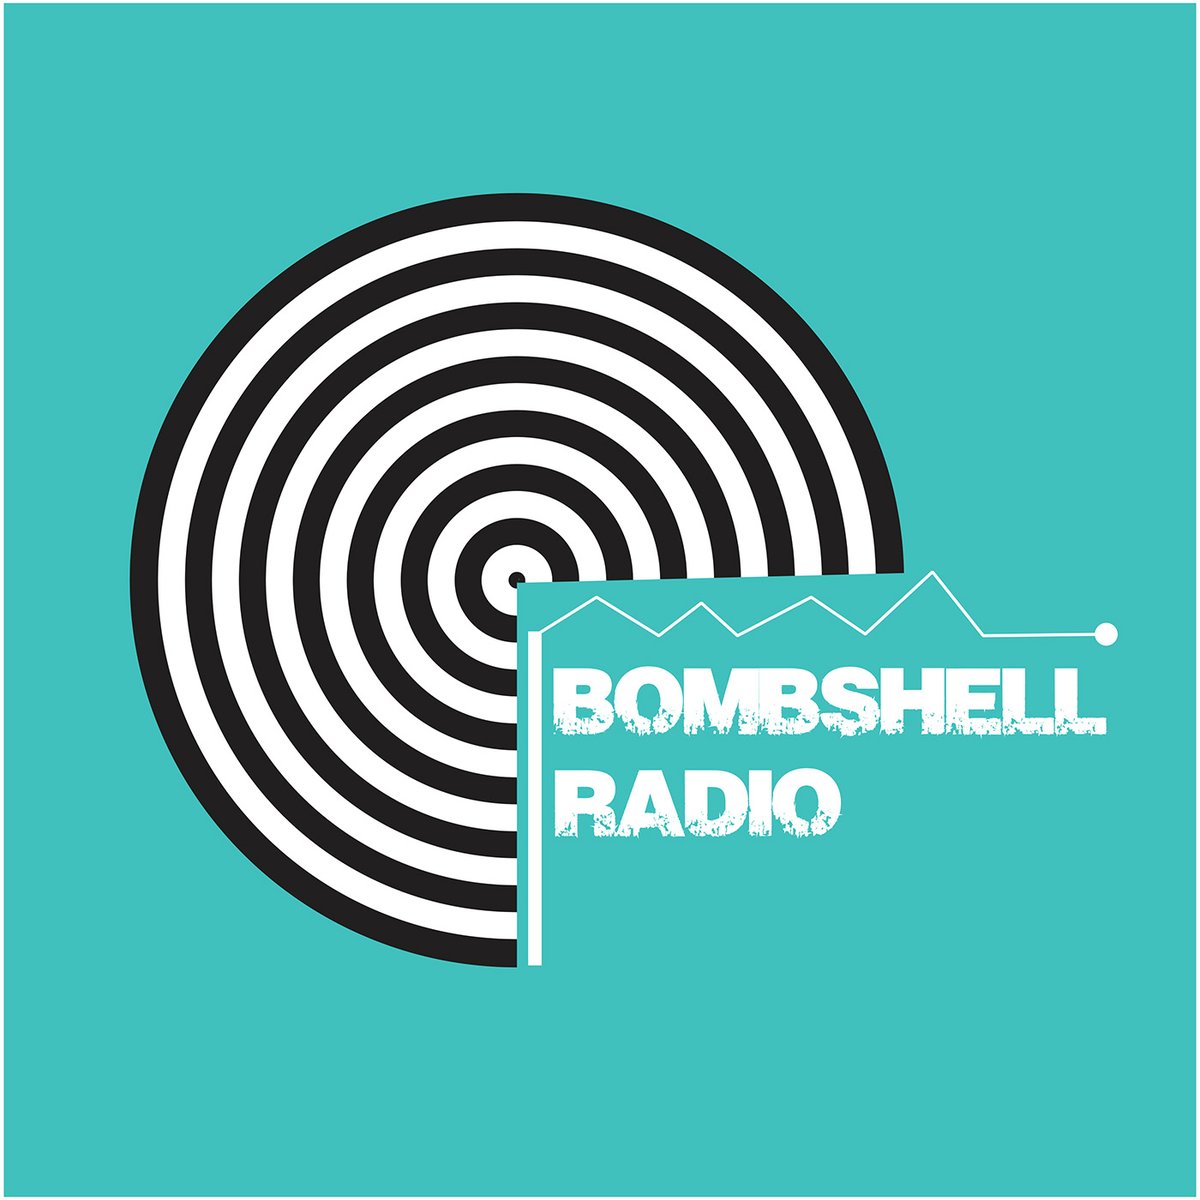 24-7 Radio! bombshellradio.com From Whispers To Screams -2012 part 3 // Revolution - Bombshell Radio Join Us!